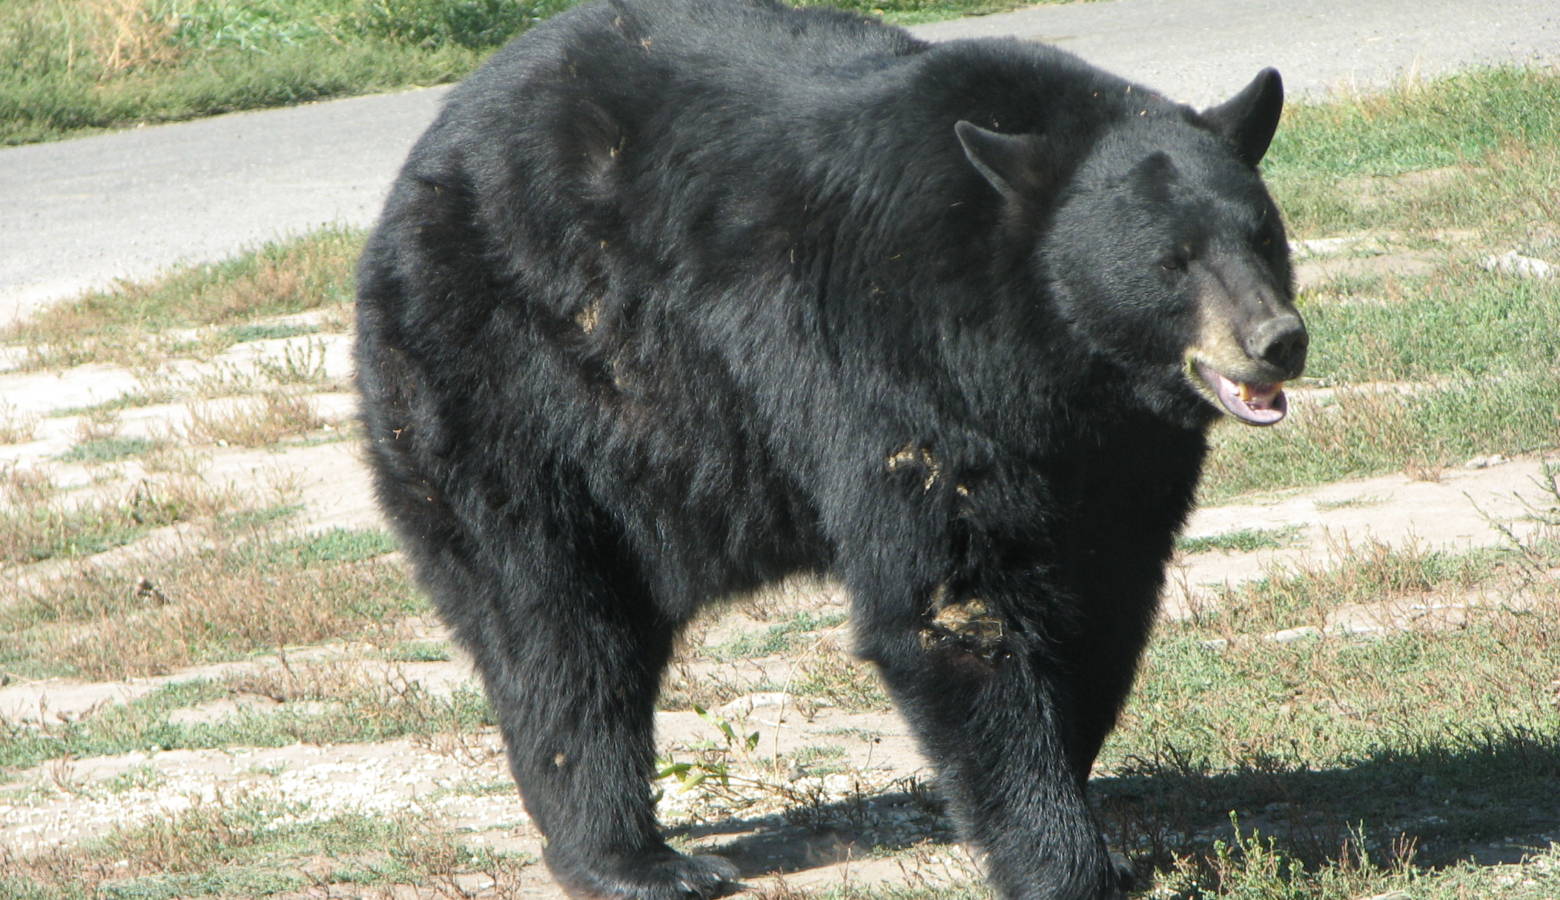 A black bear in Yellowstone Bear World wildlife park in Idaho, 2007 (David Bařina/Wikimedia Commons)